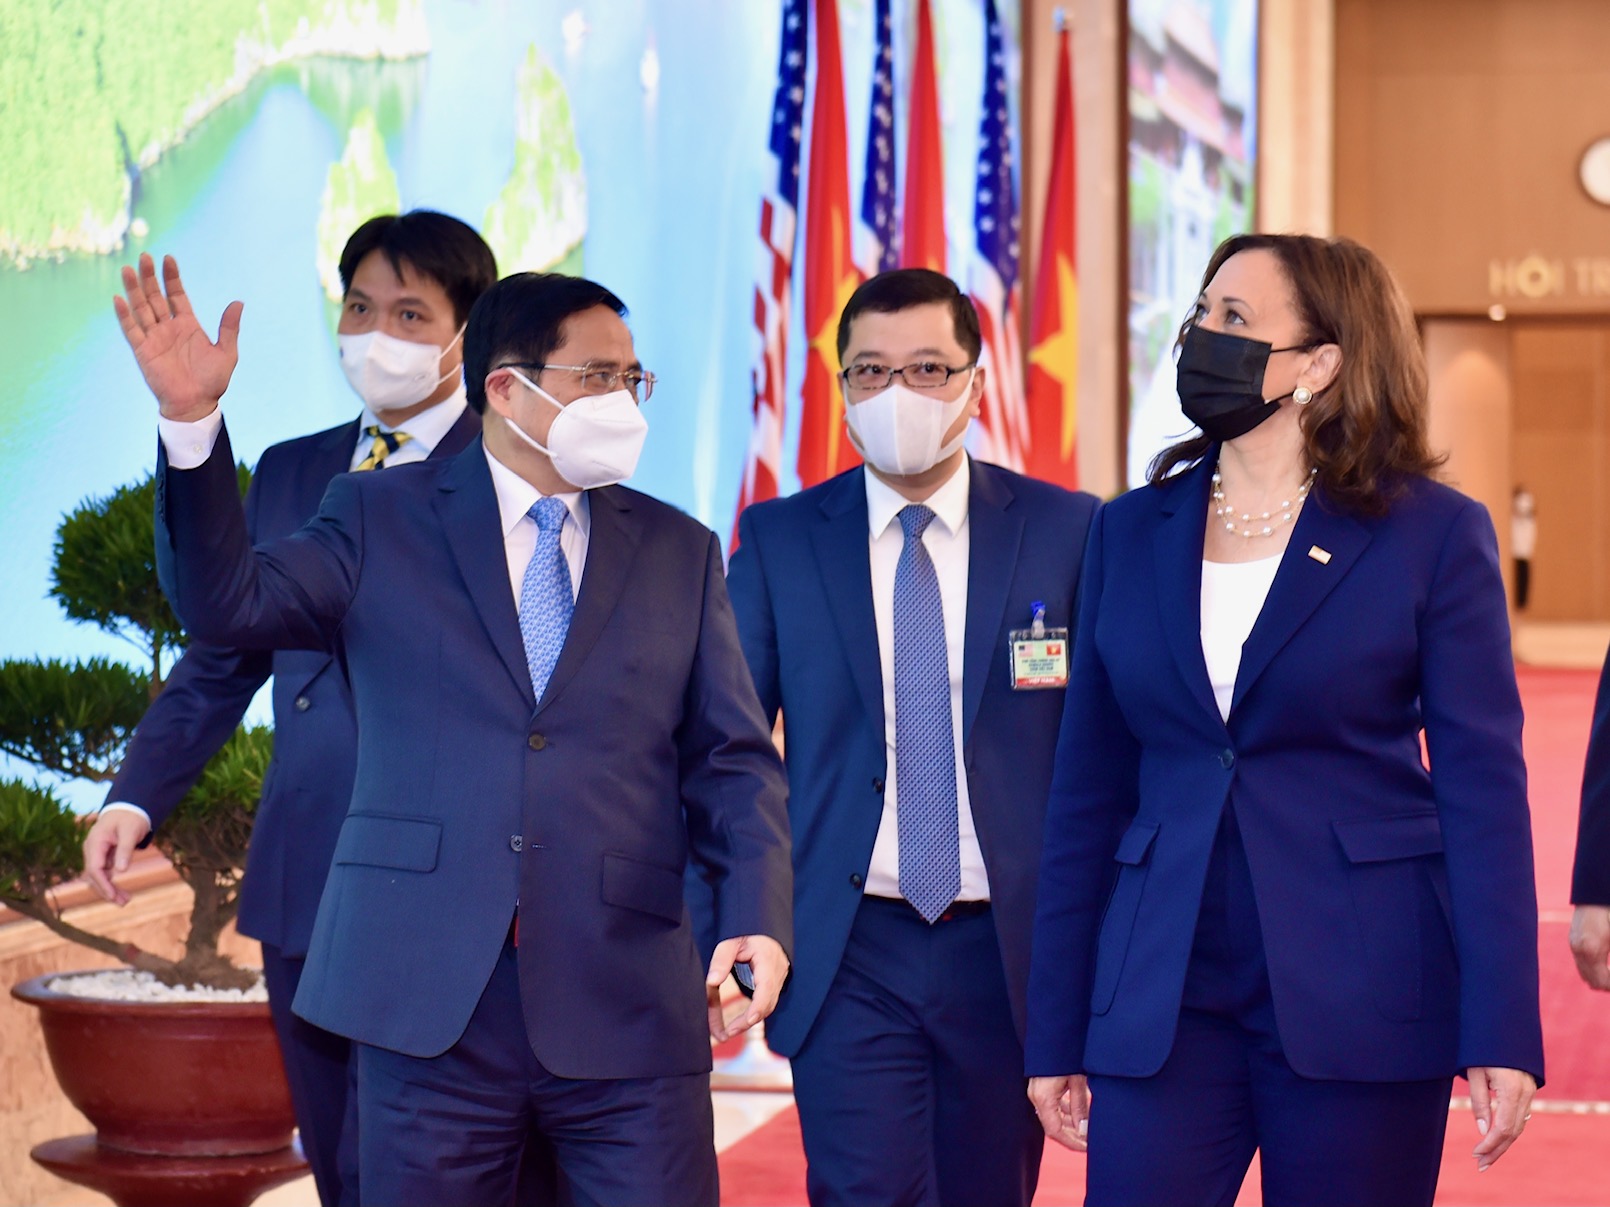 Chuyến công tác tại Hoa Kỳ của Thủ tướng: Khẳng định và triển khai đường lối đối ngoại nhất quán của Việt Nam - Ảnh 3.